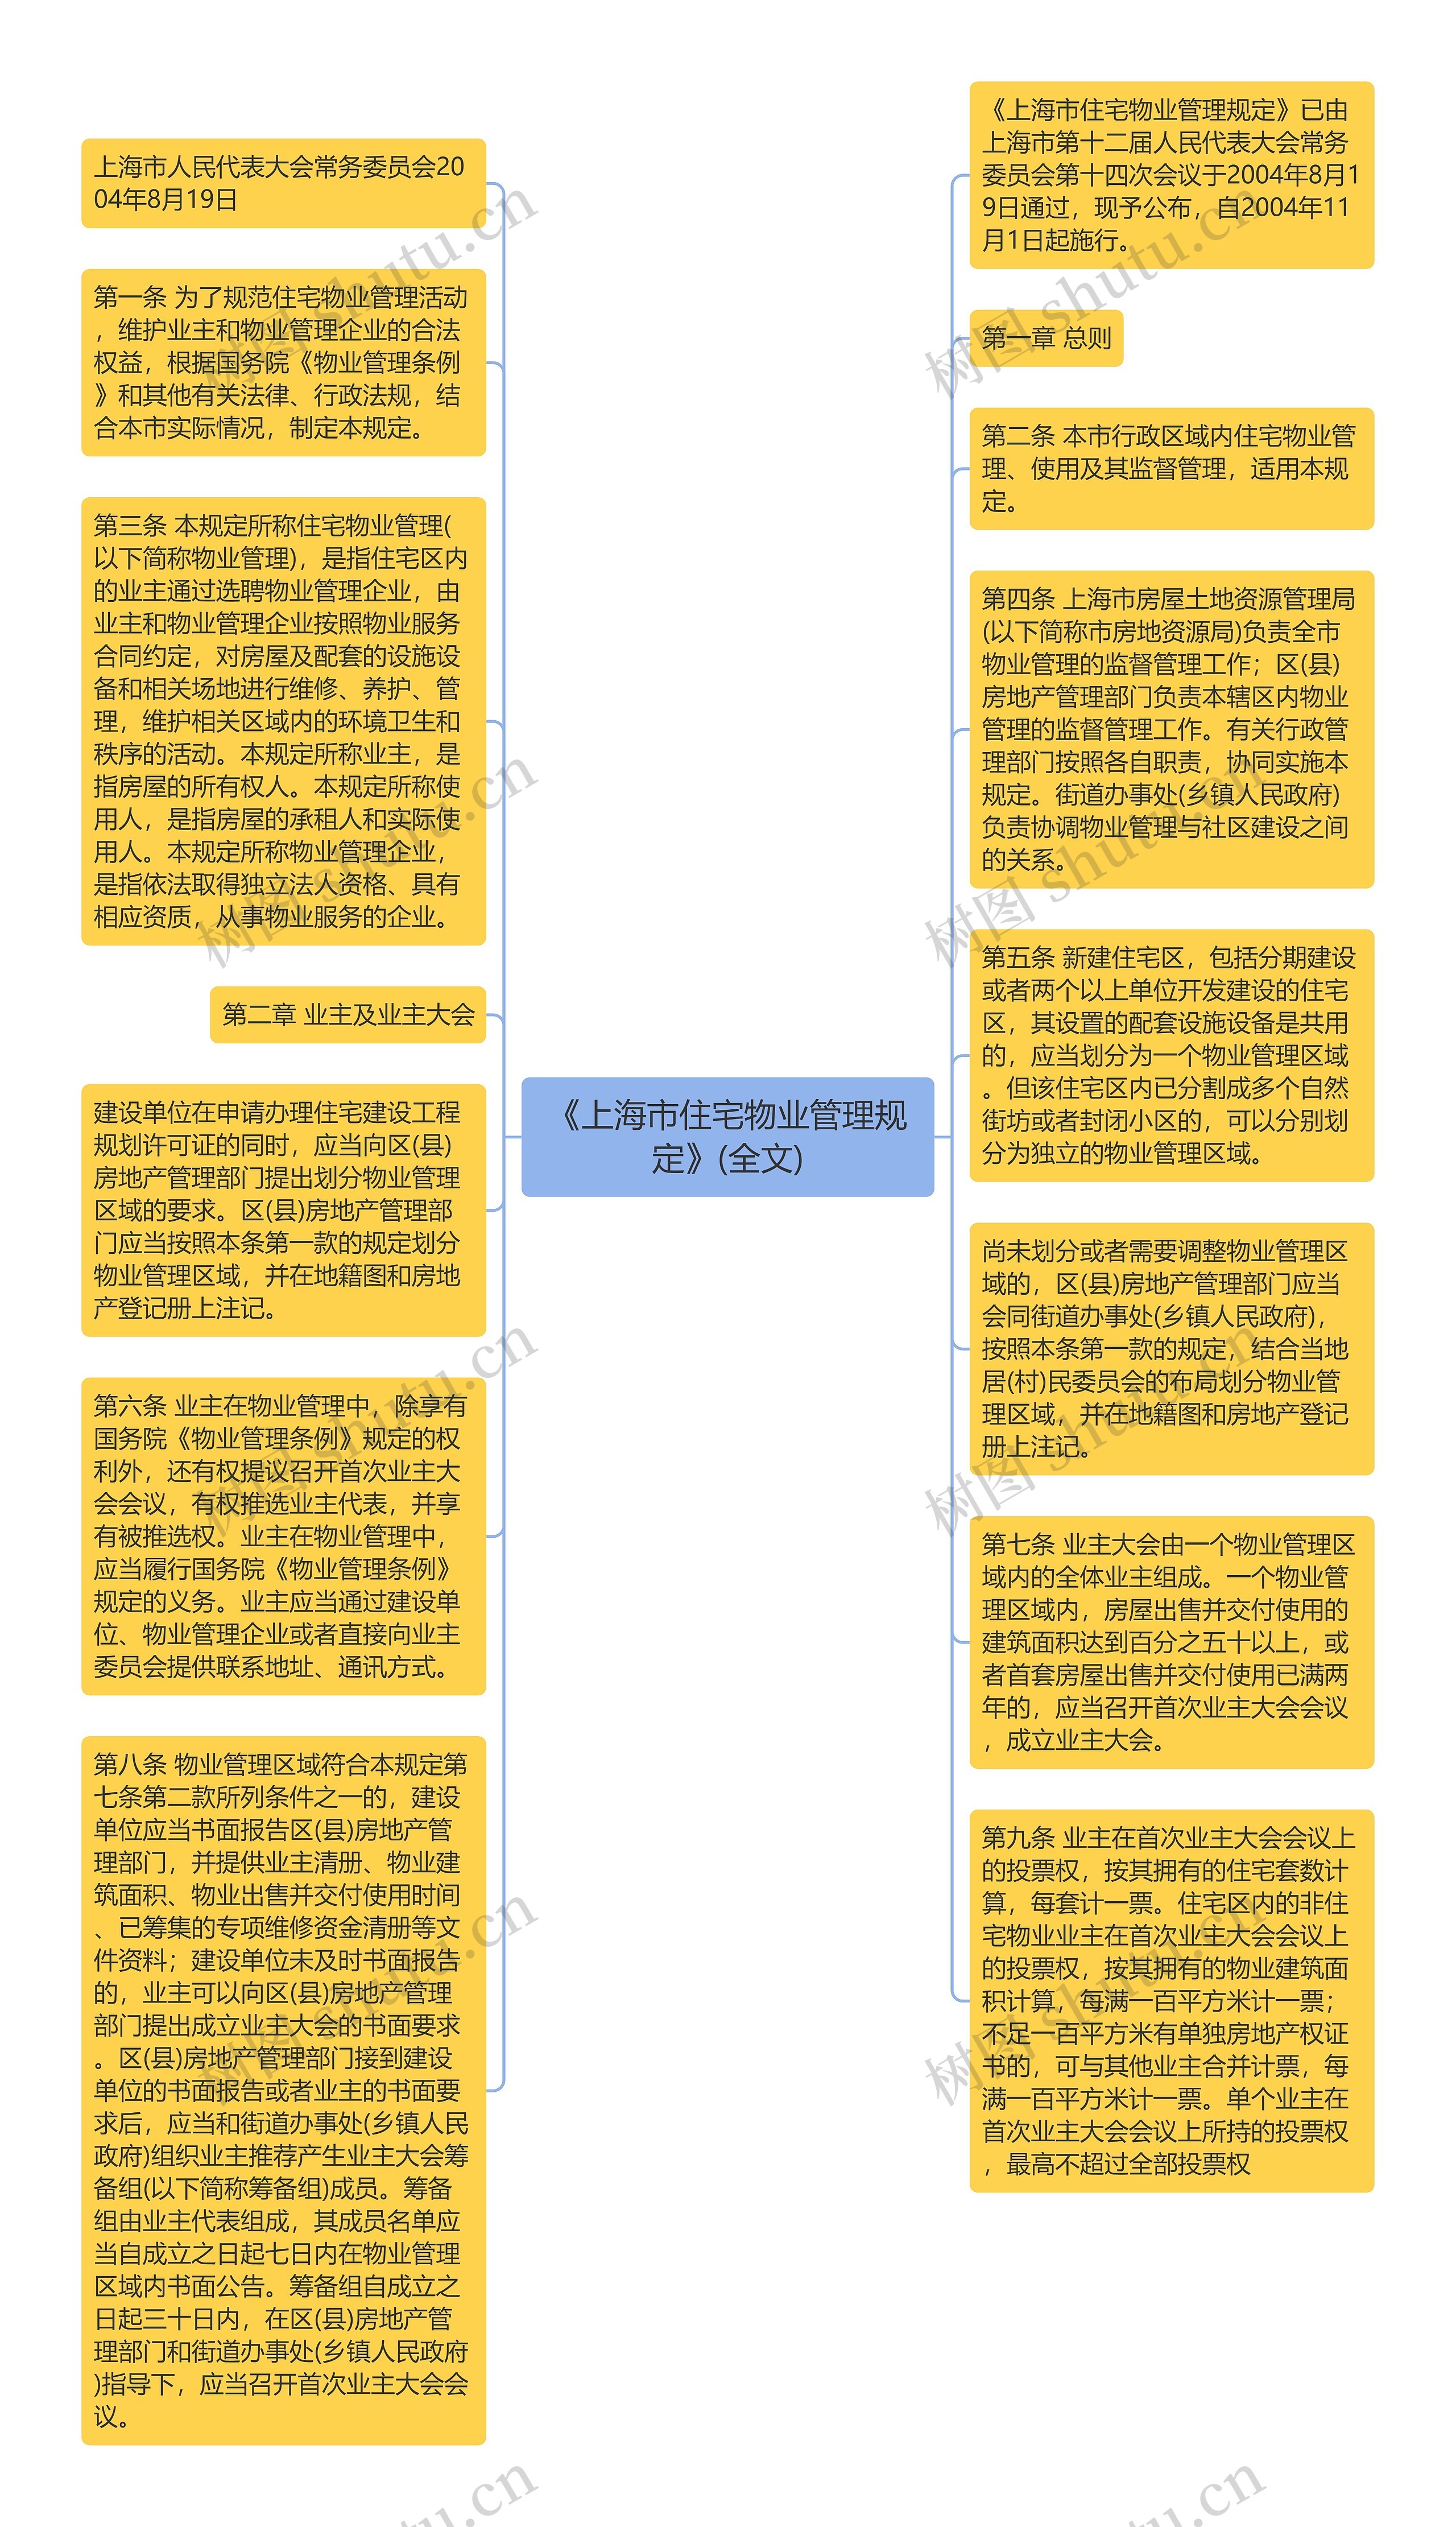 《上海市住宅物业管理规定》(全文)